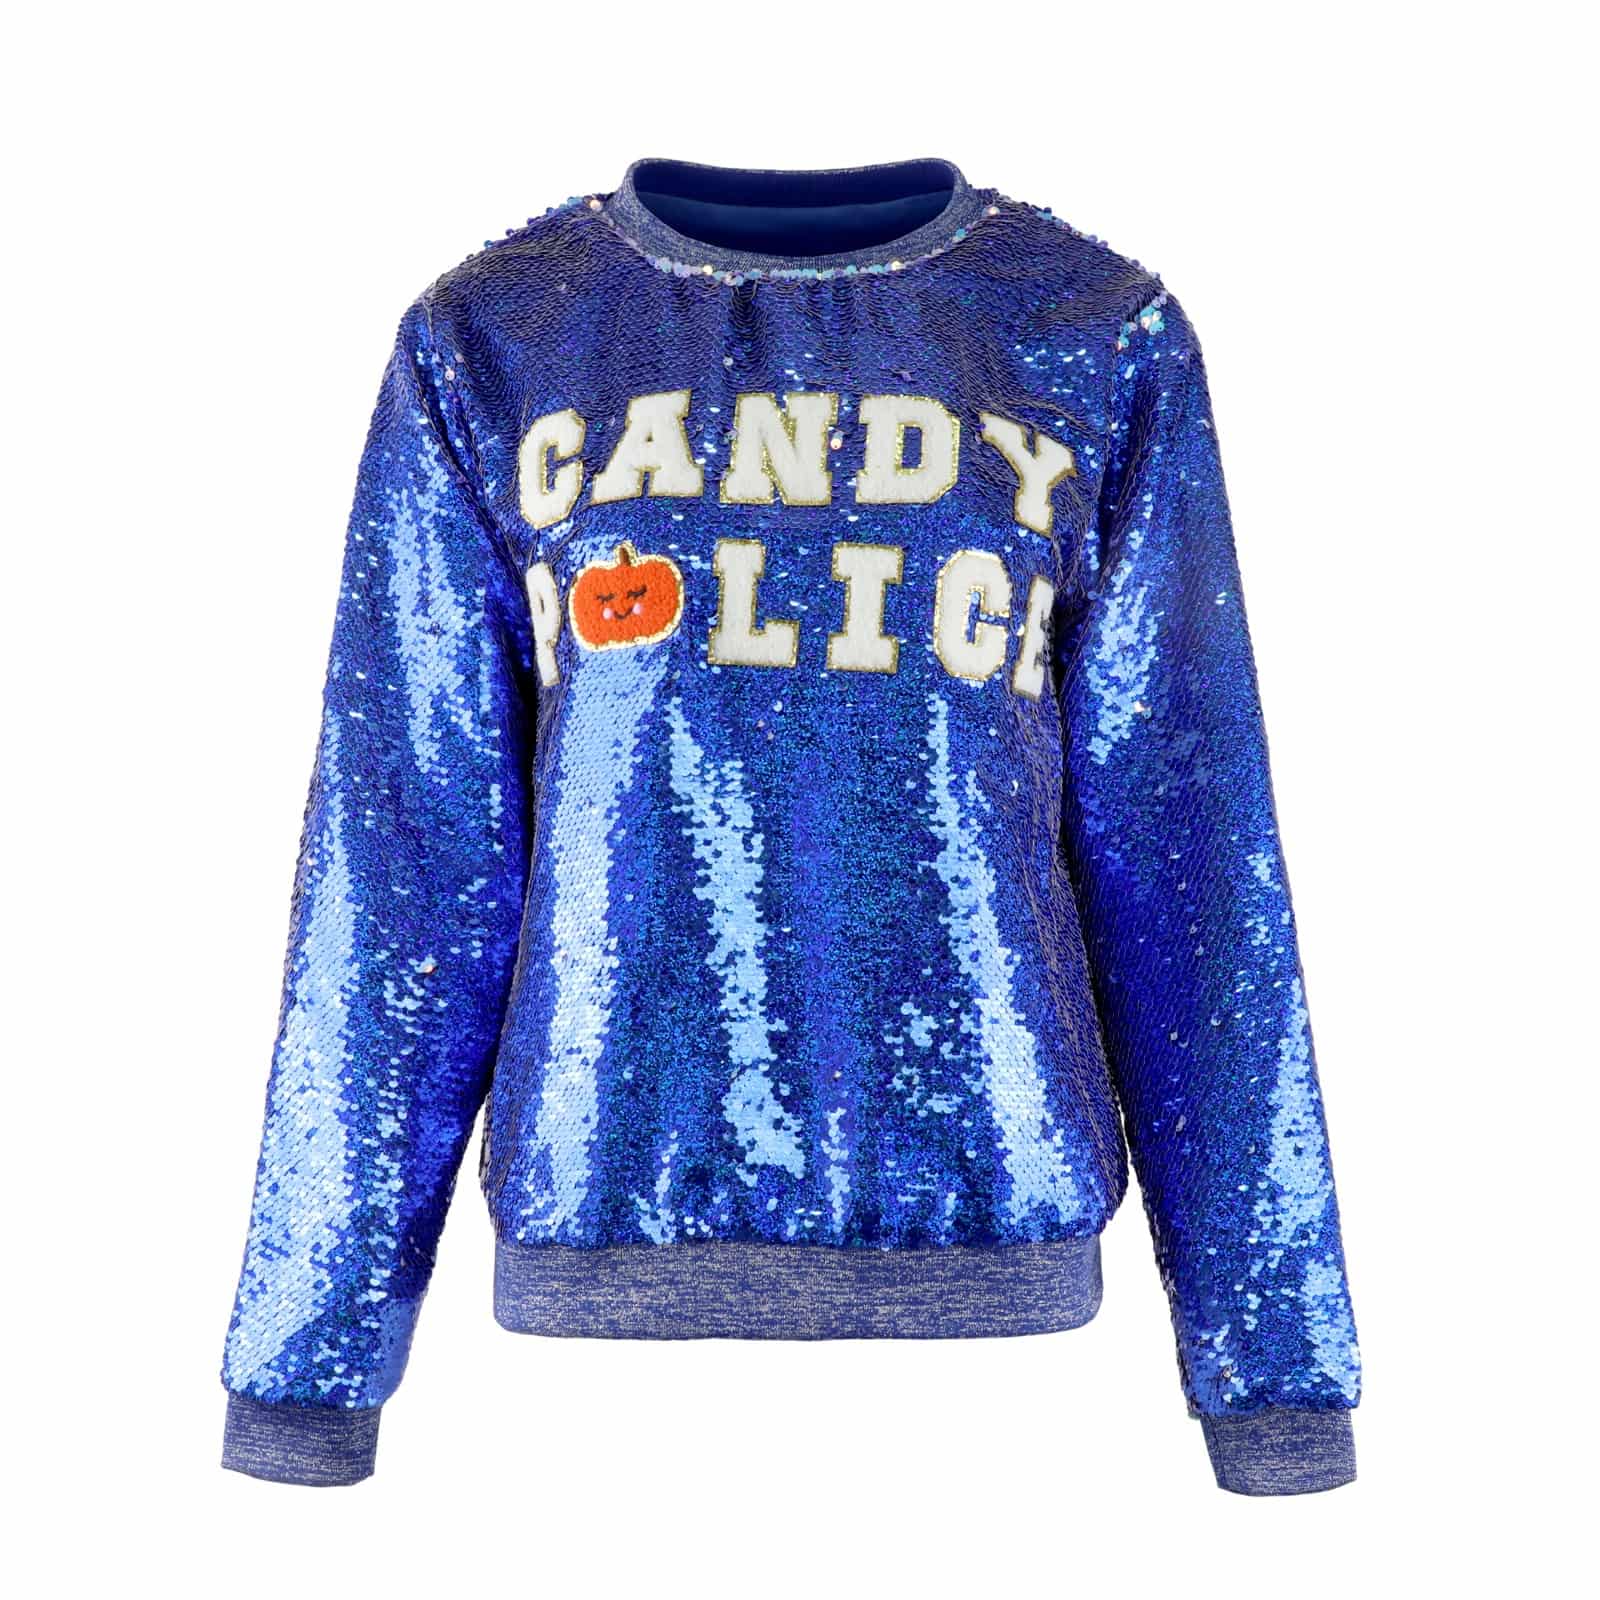 Candy police sweatshirt